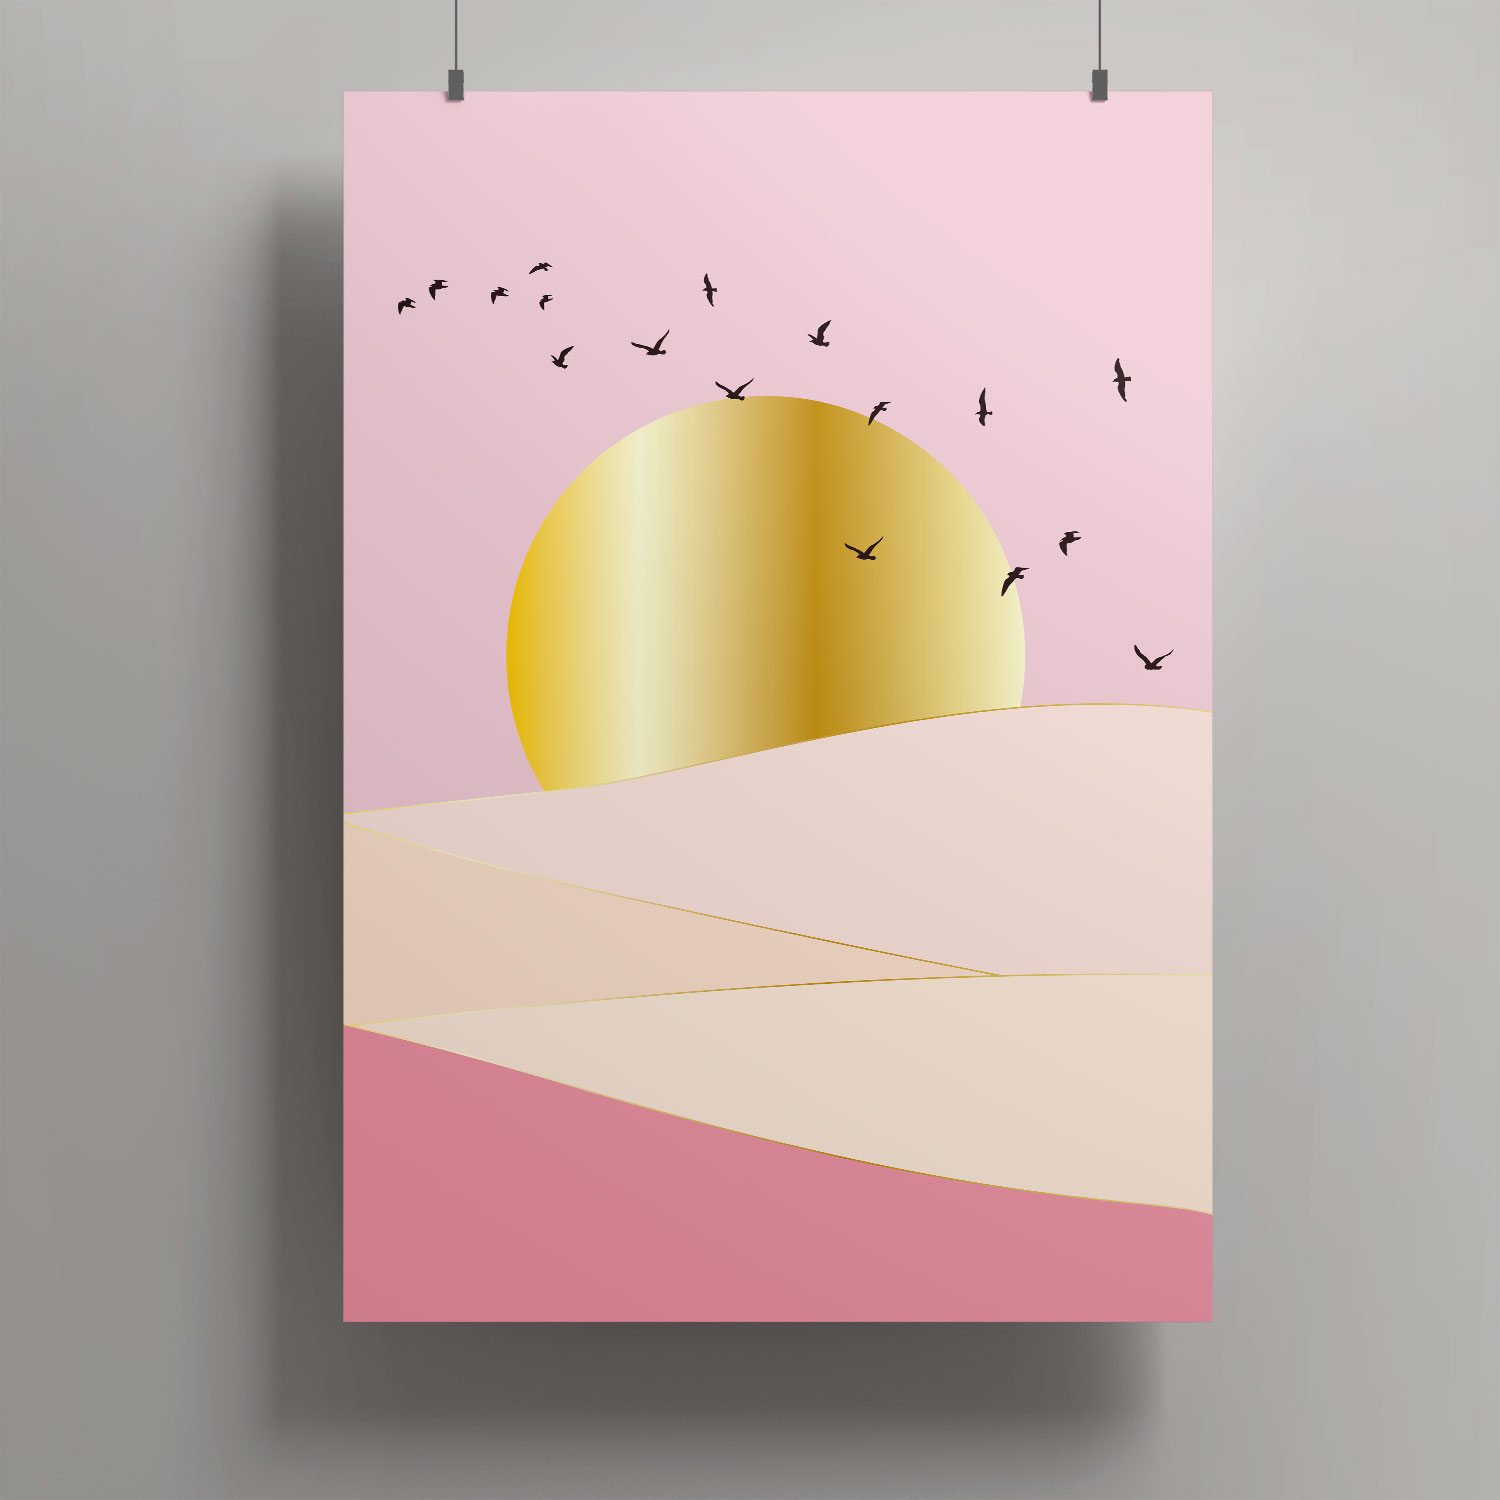 Artprint A4 - Toni Starck - Rosy birdsky